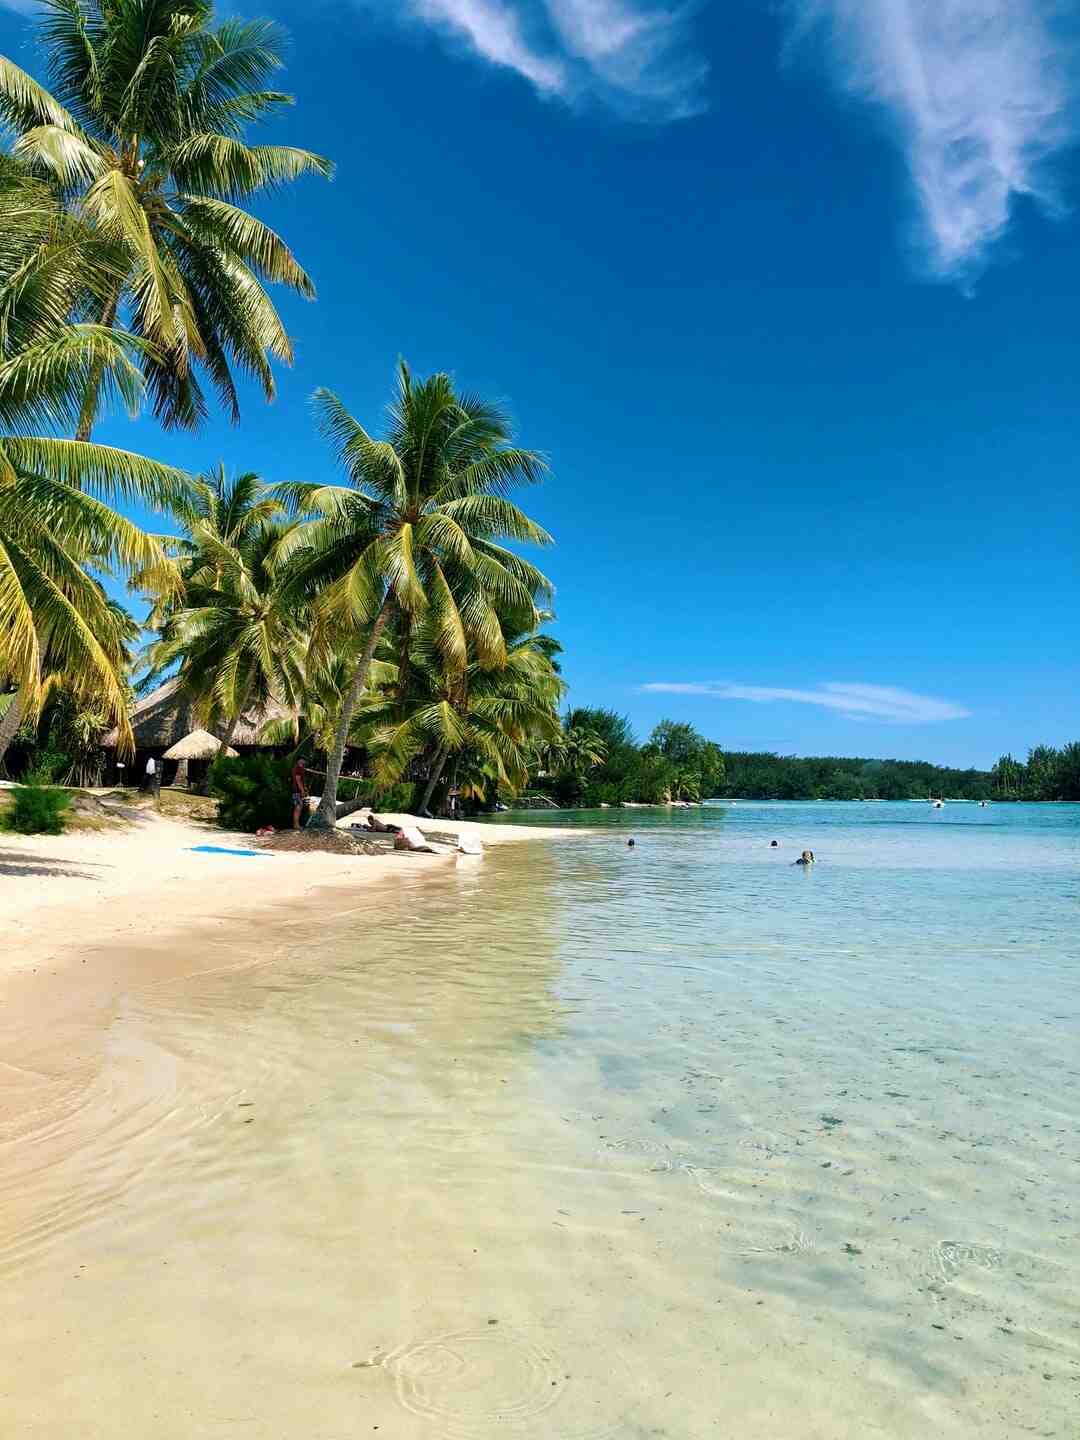 Tahiti'ye nasıl gidilir?